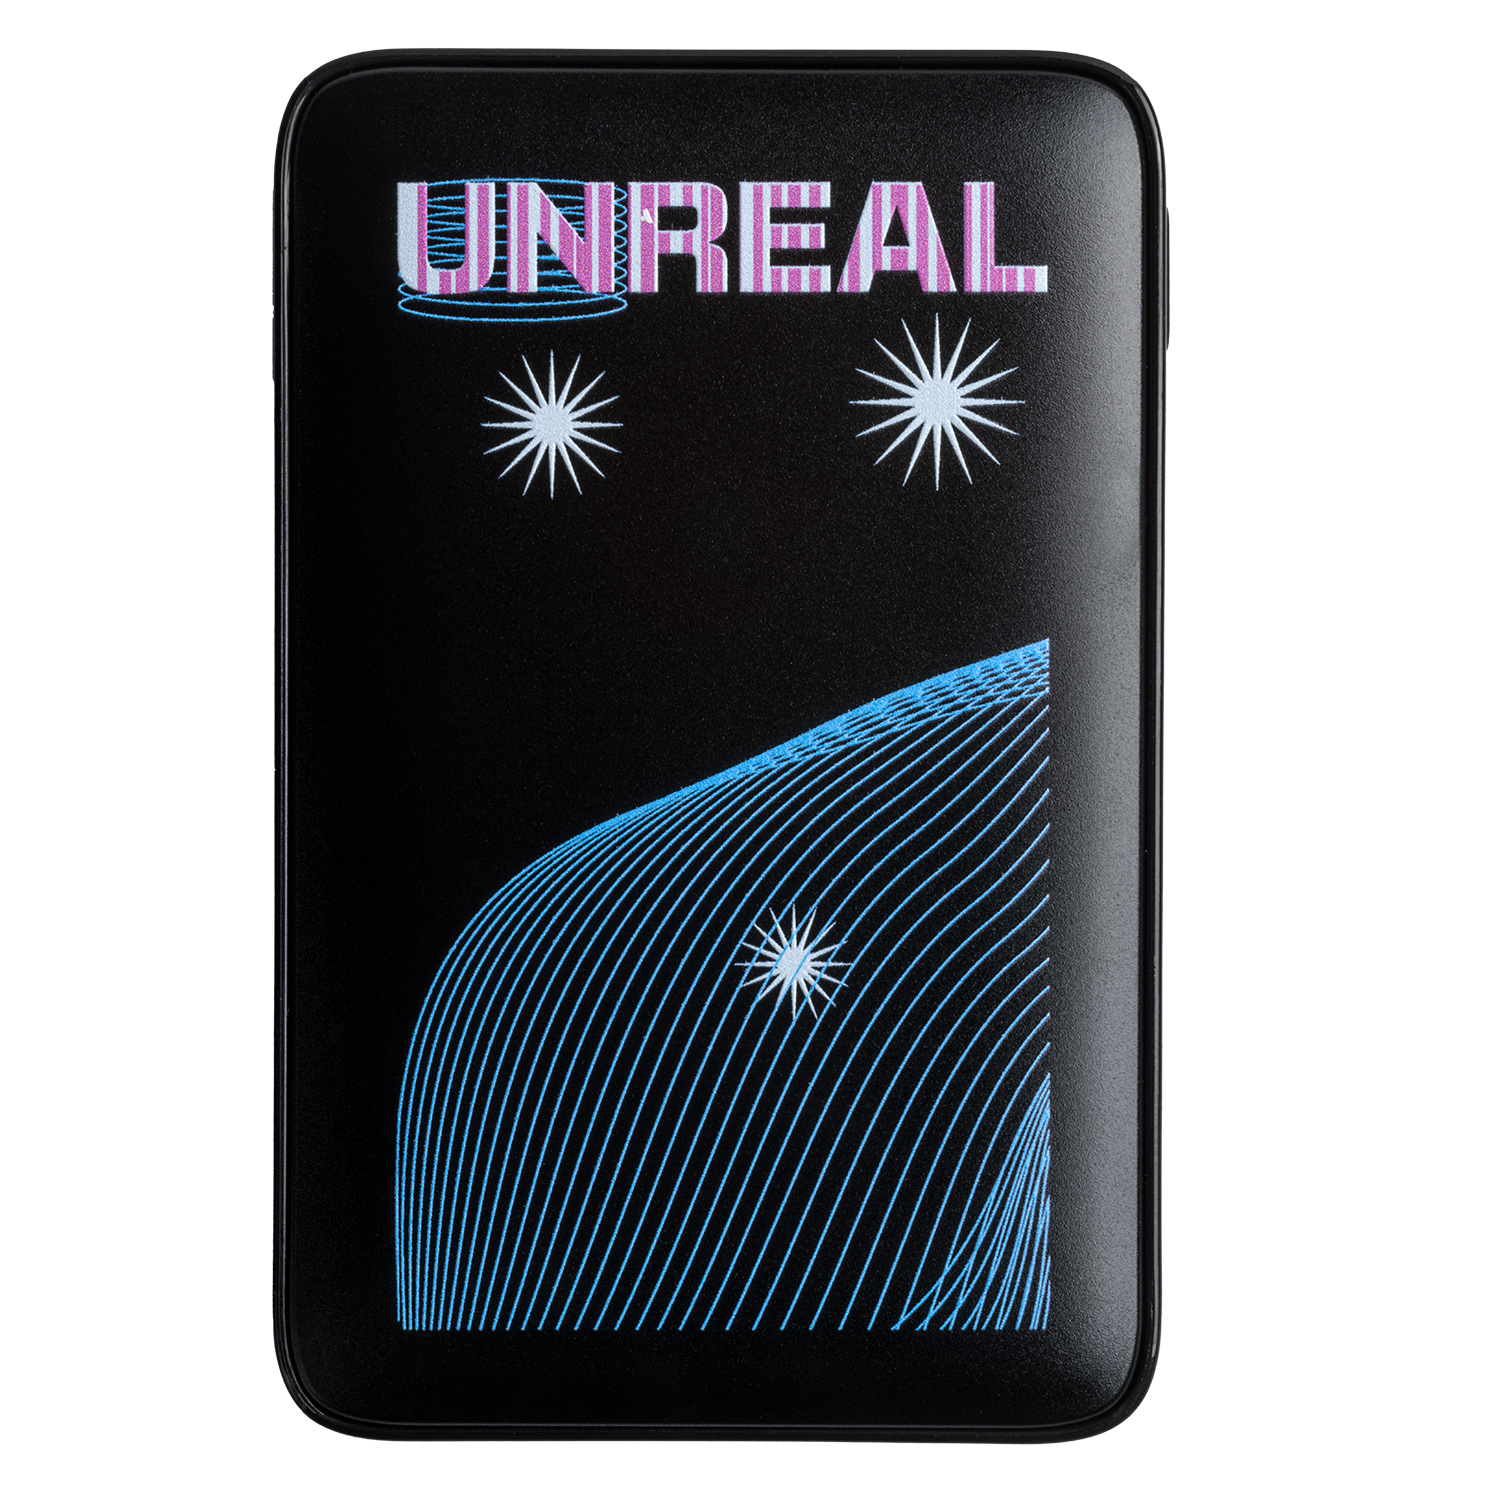 Внешний аккумулятор с цветной подсветкой Ancor 5000 mAh, черный Unreal